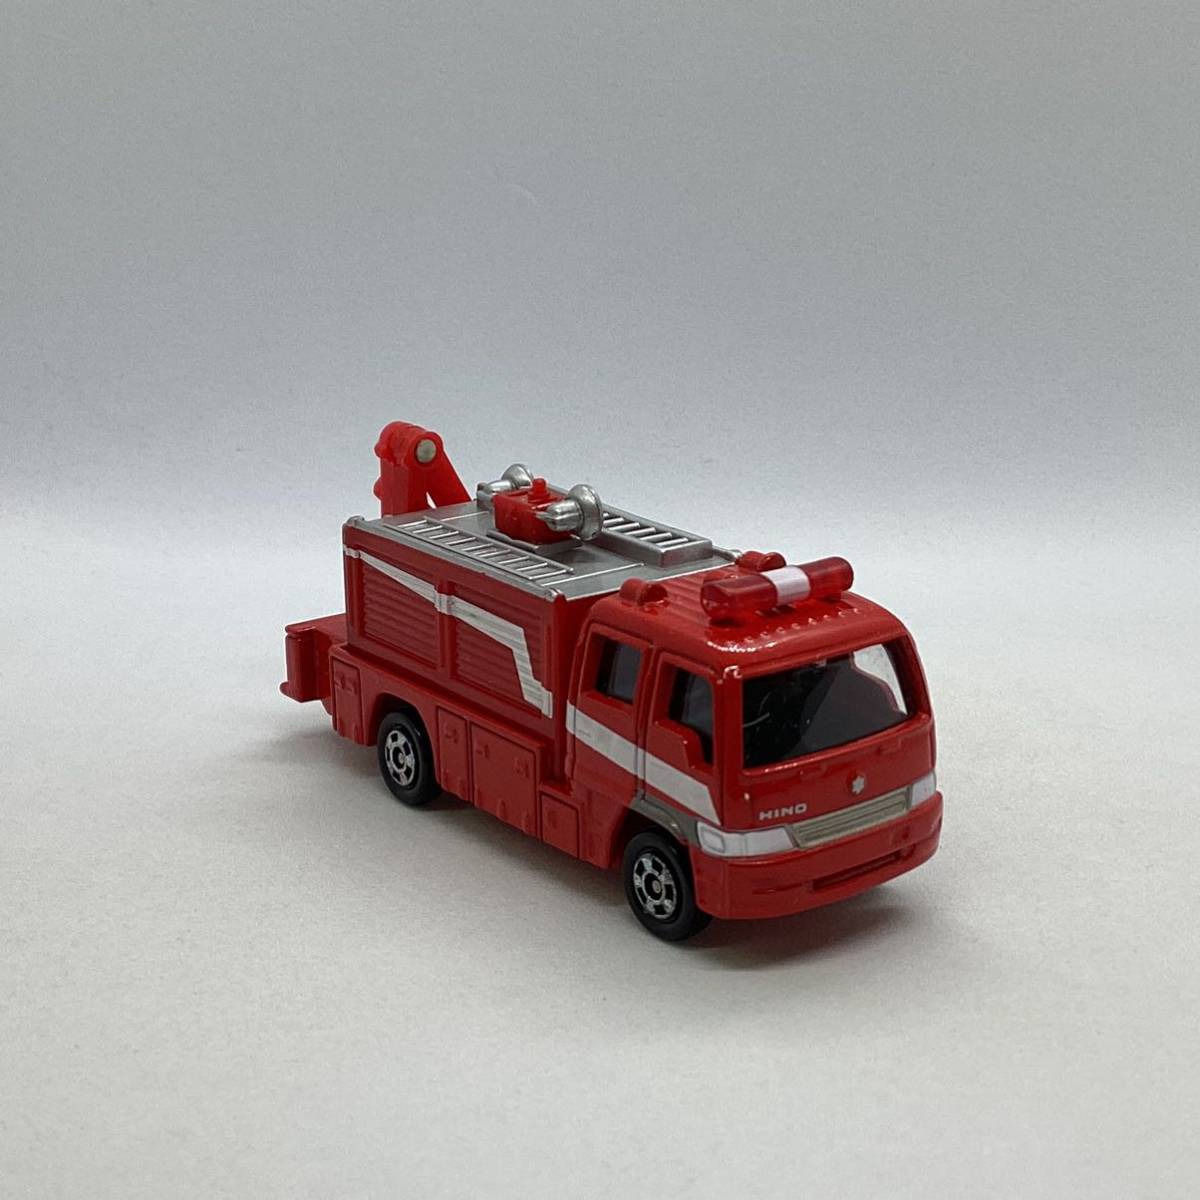 EH990 トミカ ミニカー 災害対策用救助車 Ⅲ型_画像2